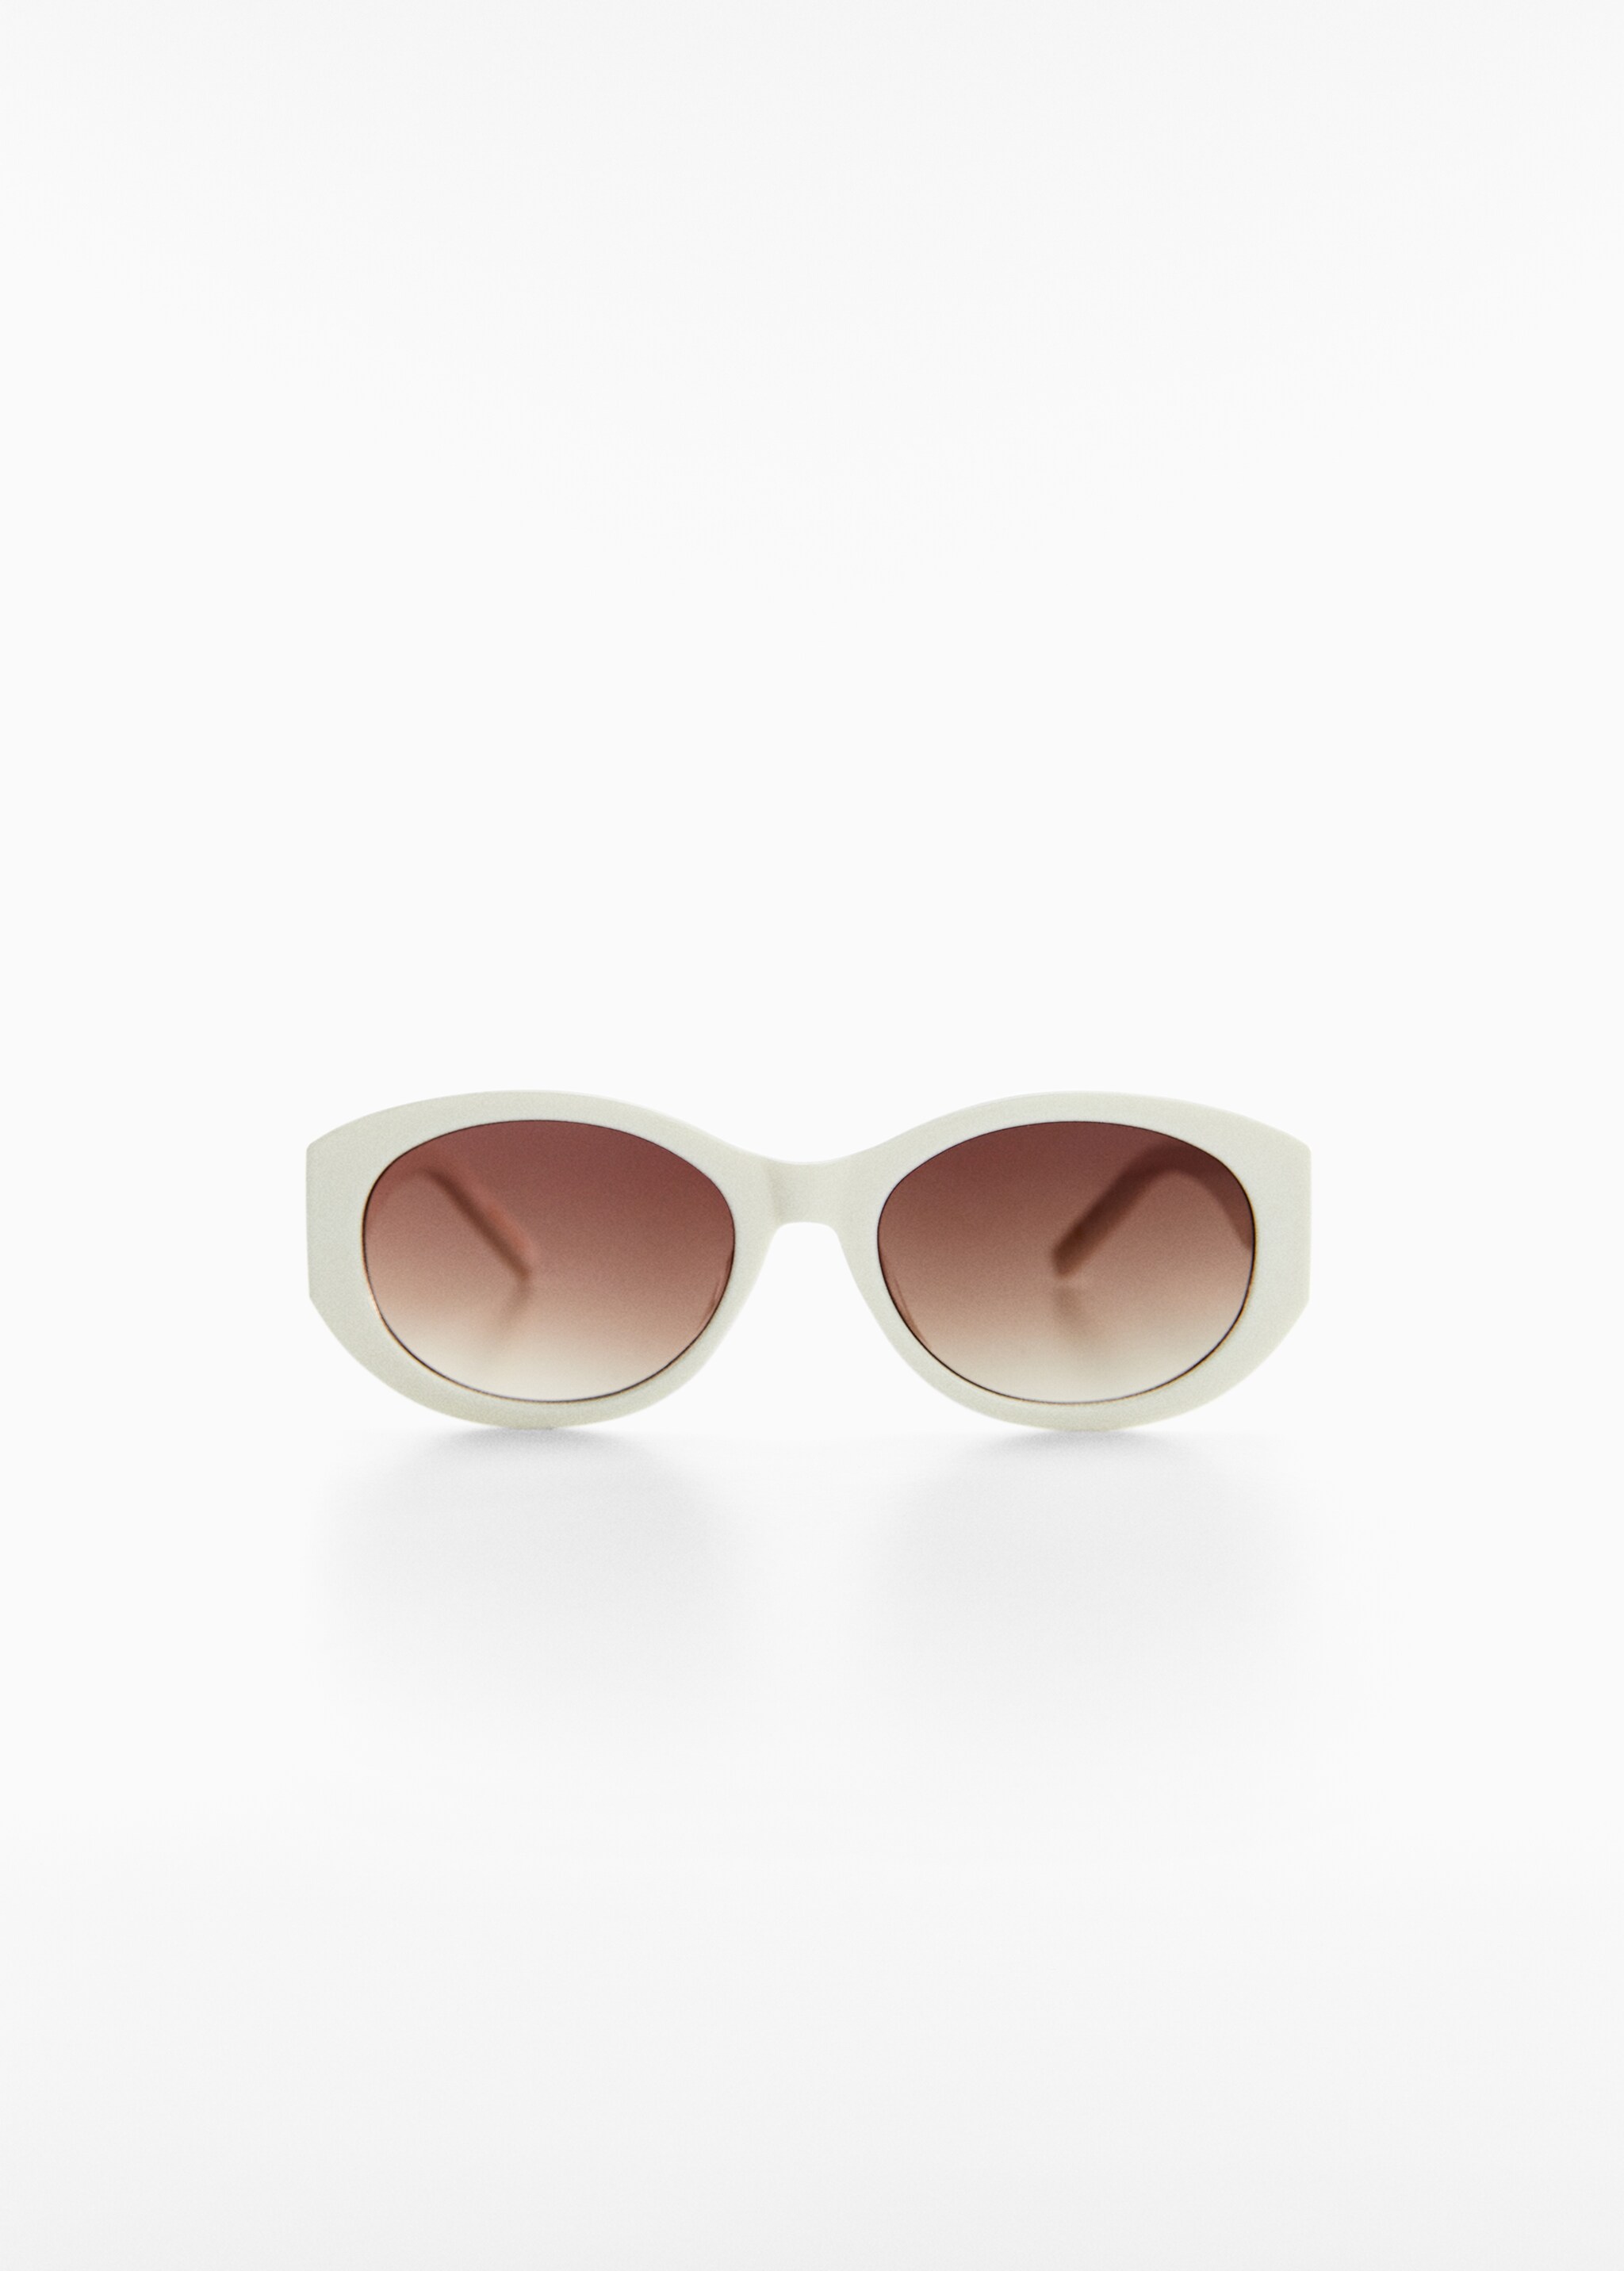 Gafas de sol ovaladas - Artículo sin modelo